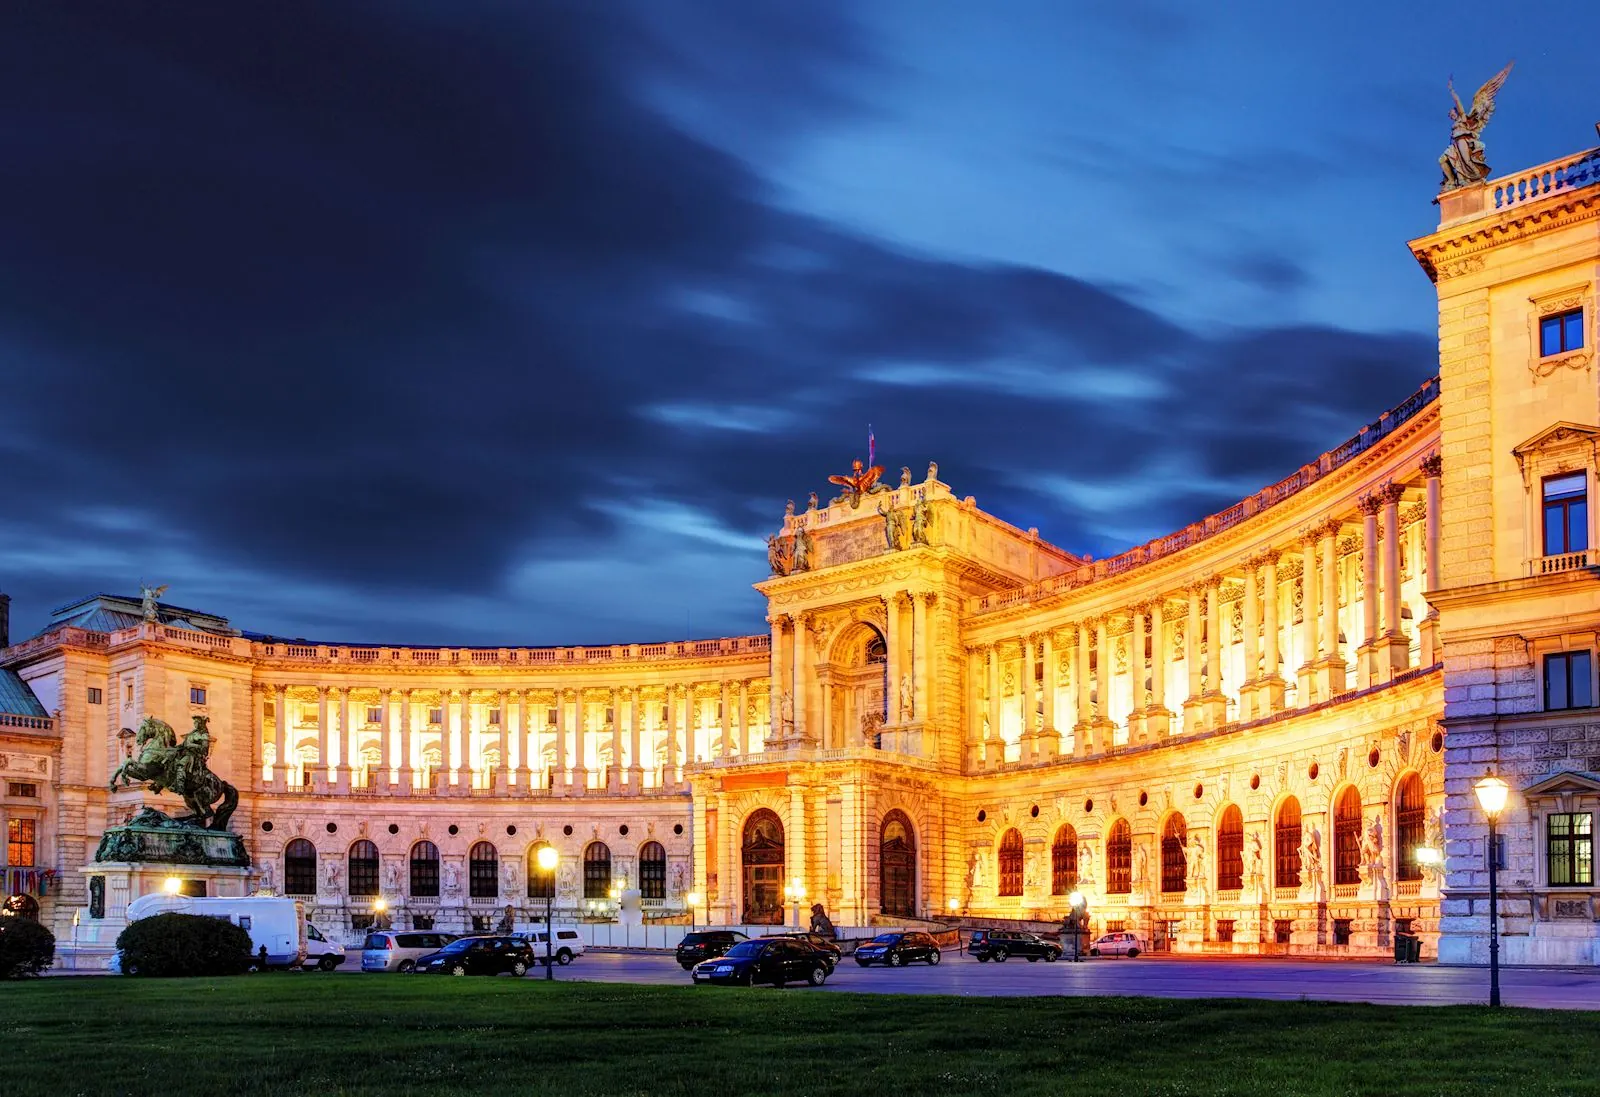 Vienna Hofburg Imperial Palace at night